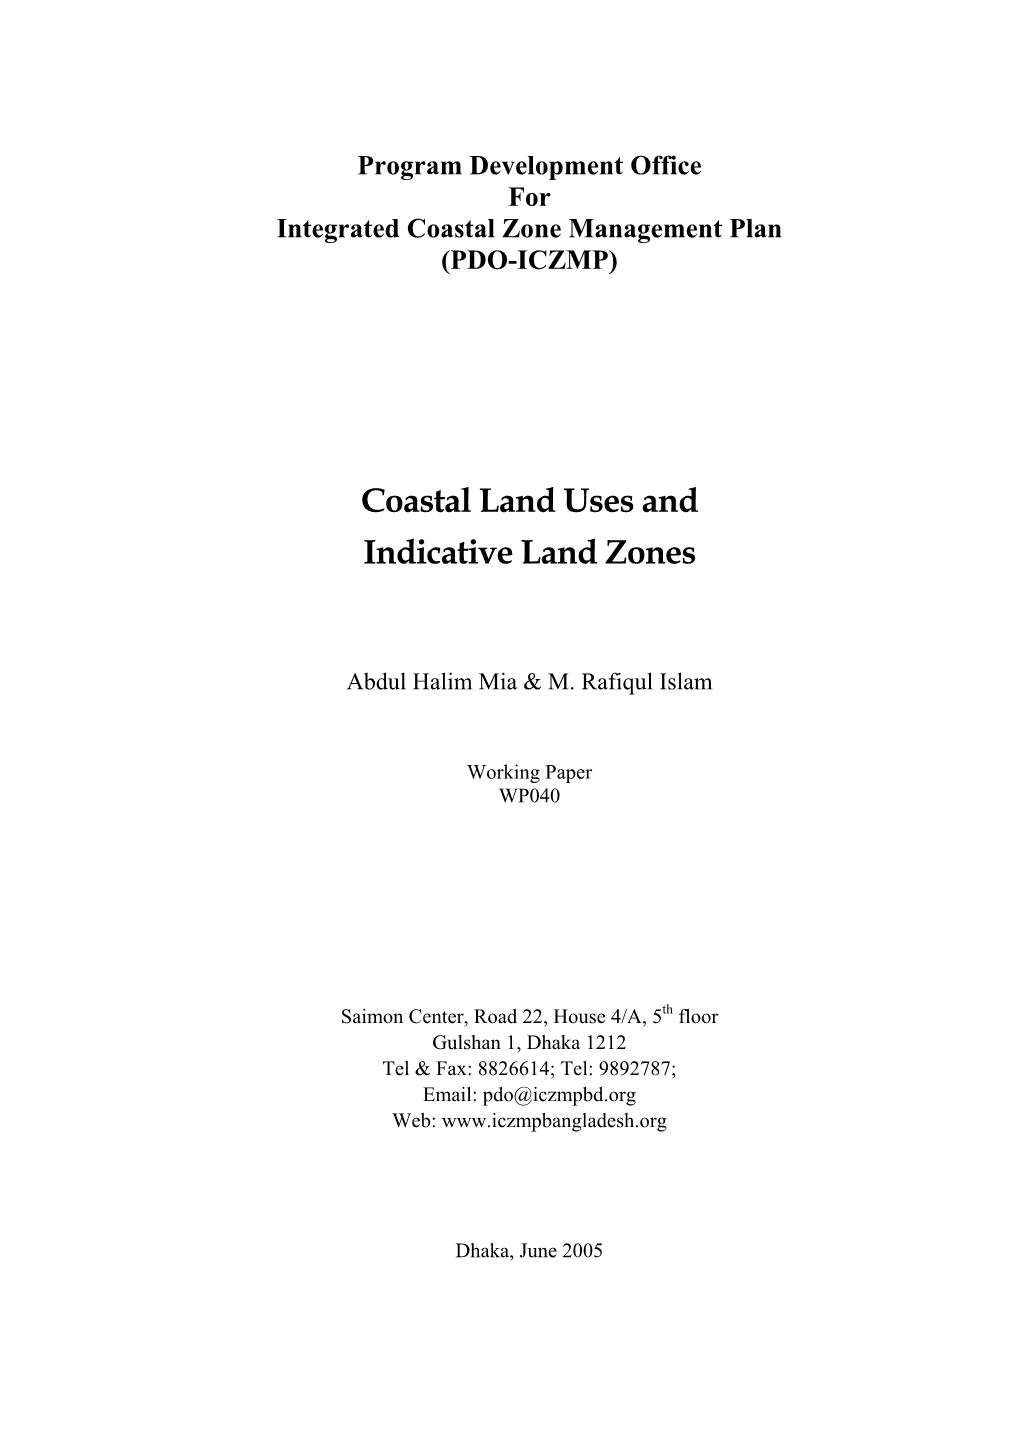 Coastal Land Uses and Indicative Land Zones